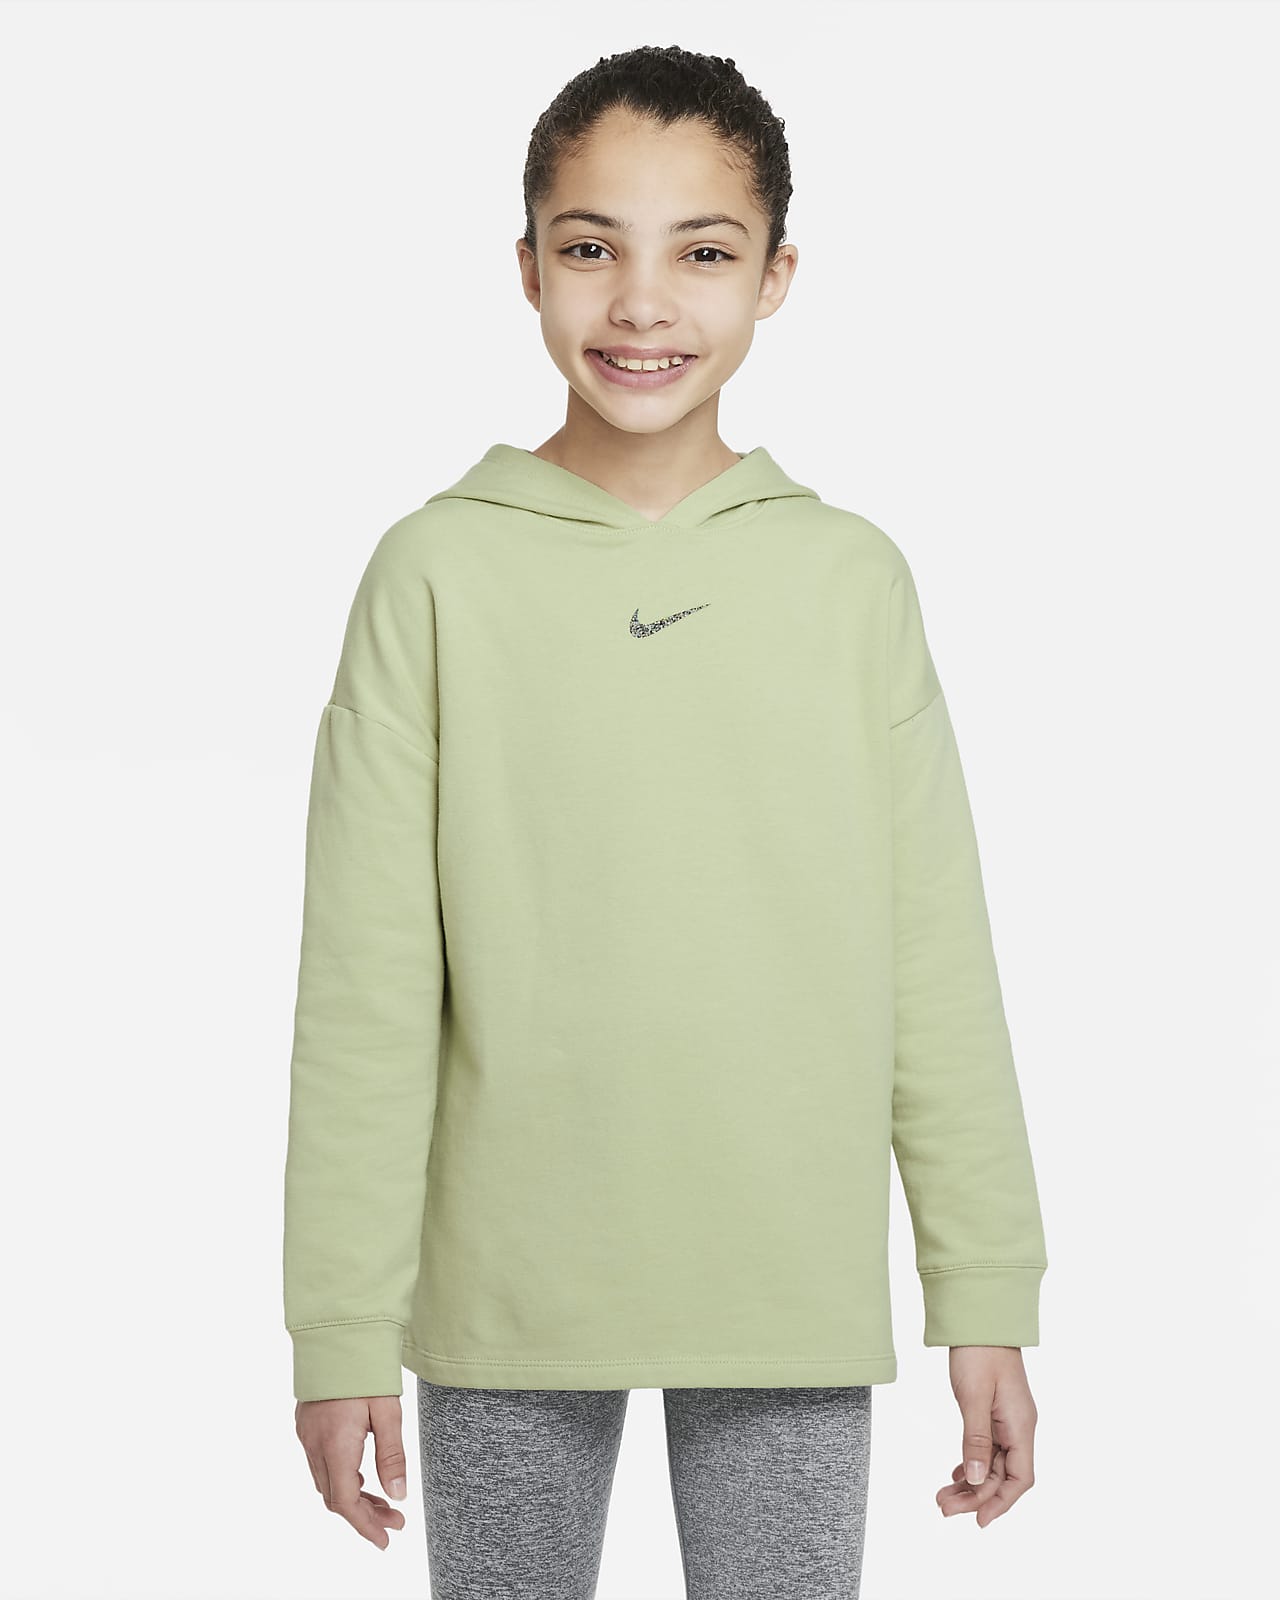 Nike Yoga Older Kids' (Girls') Fleece Top